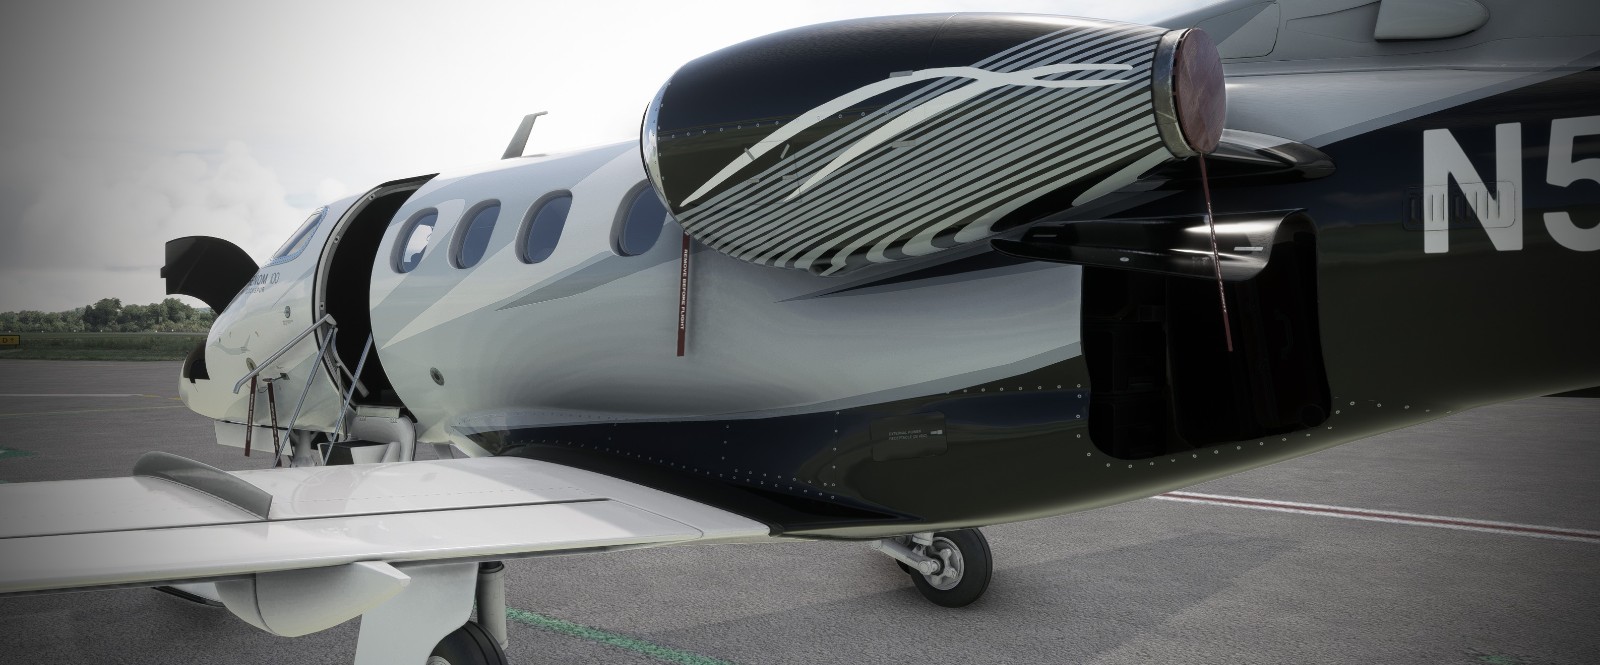 《微軟飛行模擬》空客A300預告公布飛鴻100測試中